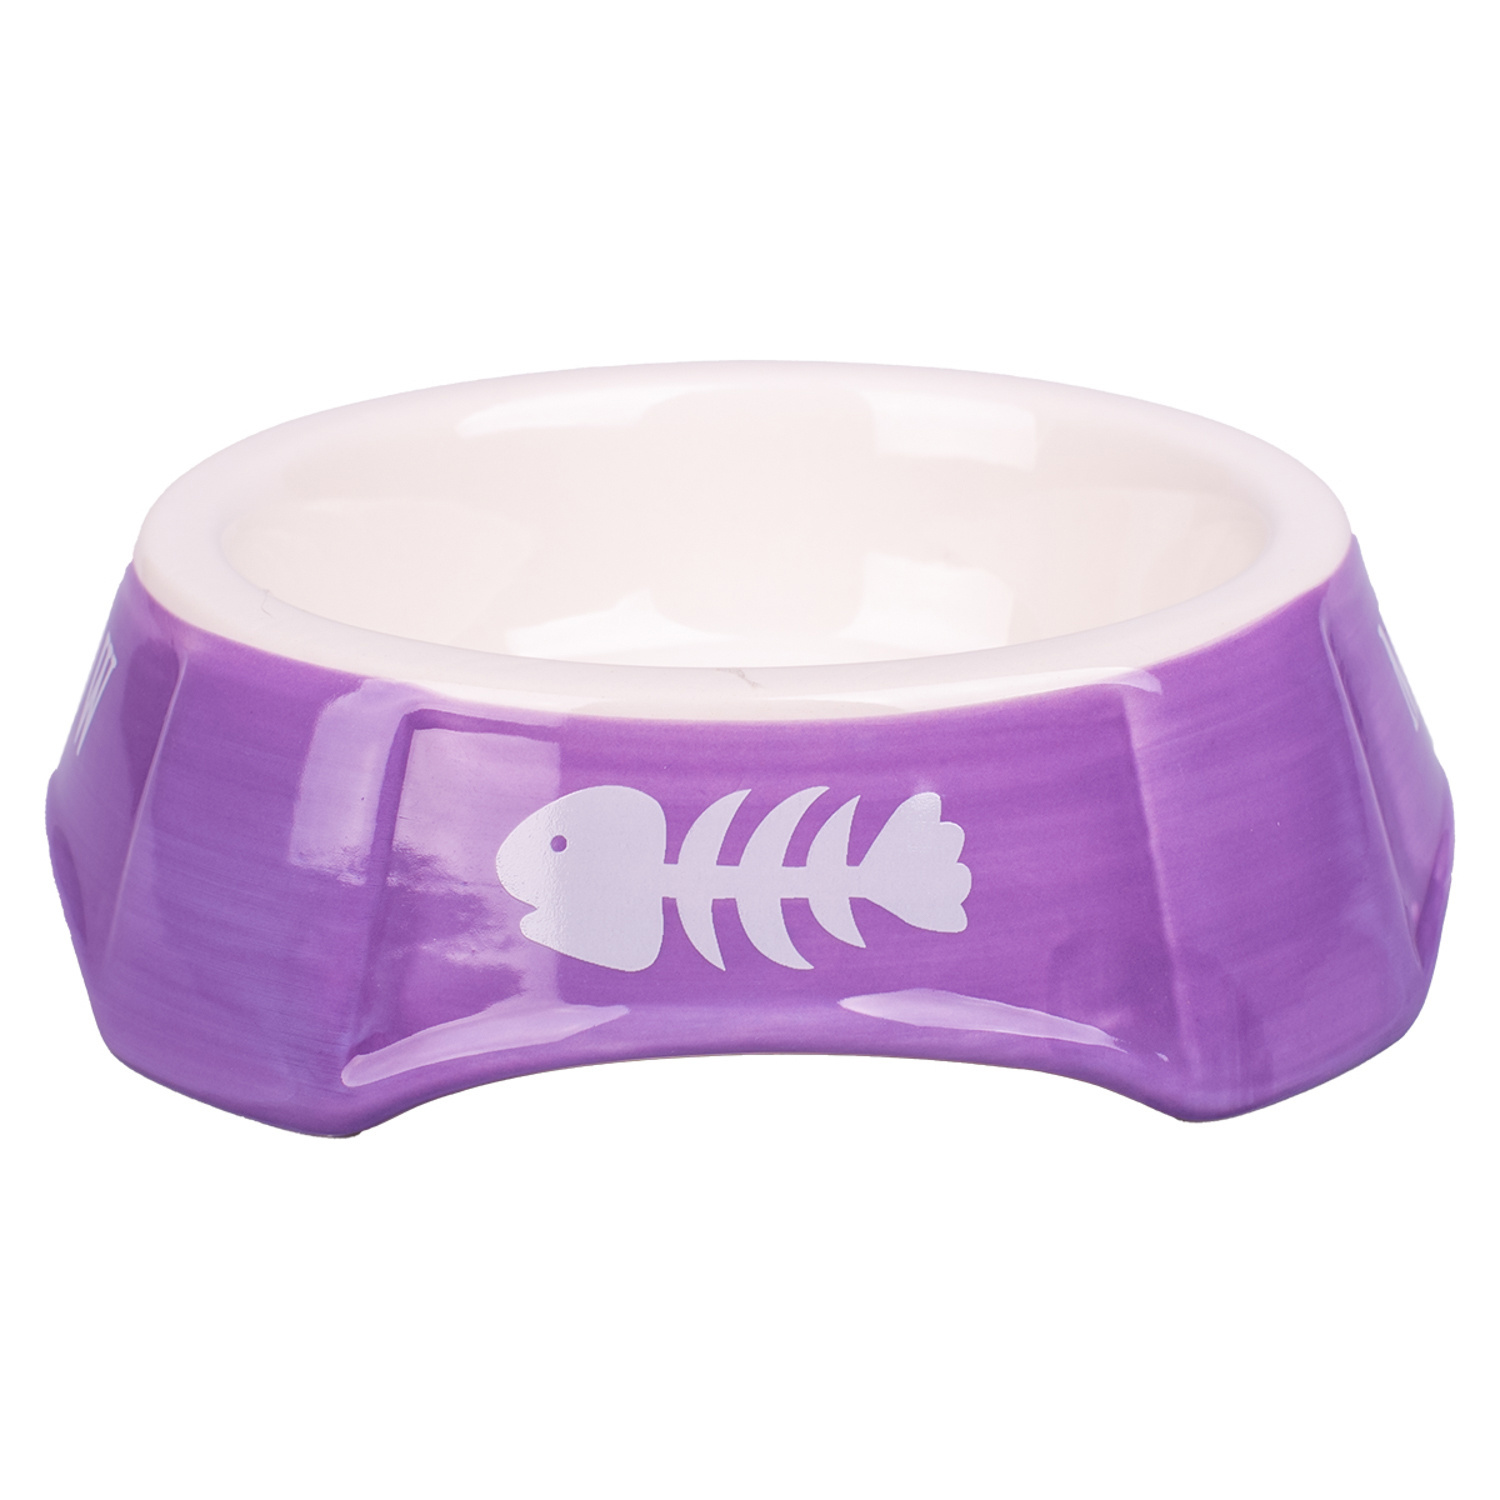 Mr.Kranch миска  керамическая для кошек фиолетовая с рыбками (140 мл) Mr.Kranch миска  керамическая для кошек фиолетовая с рыбками (140 мл) - фото 1